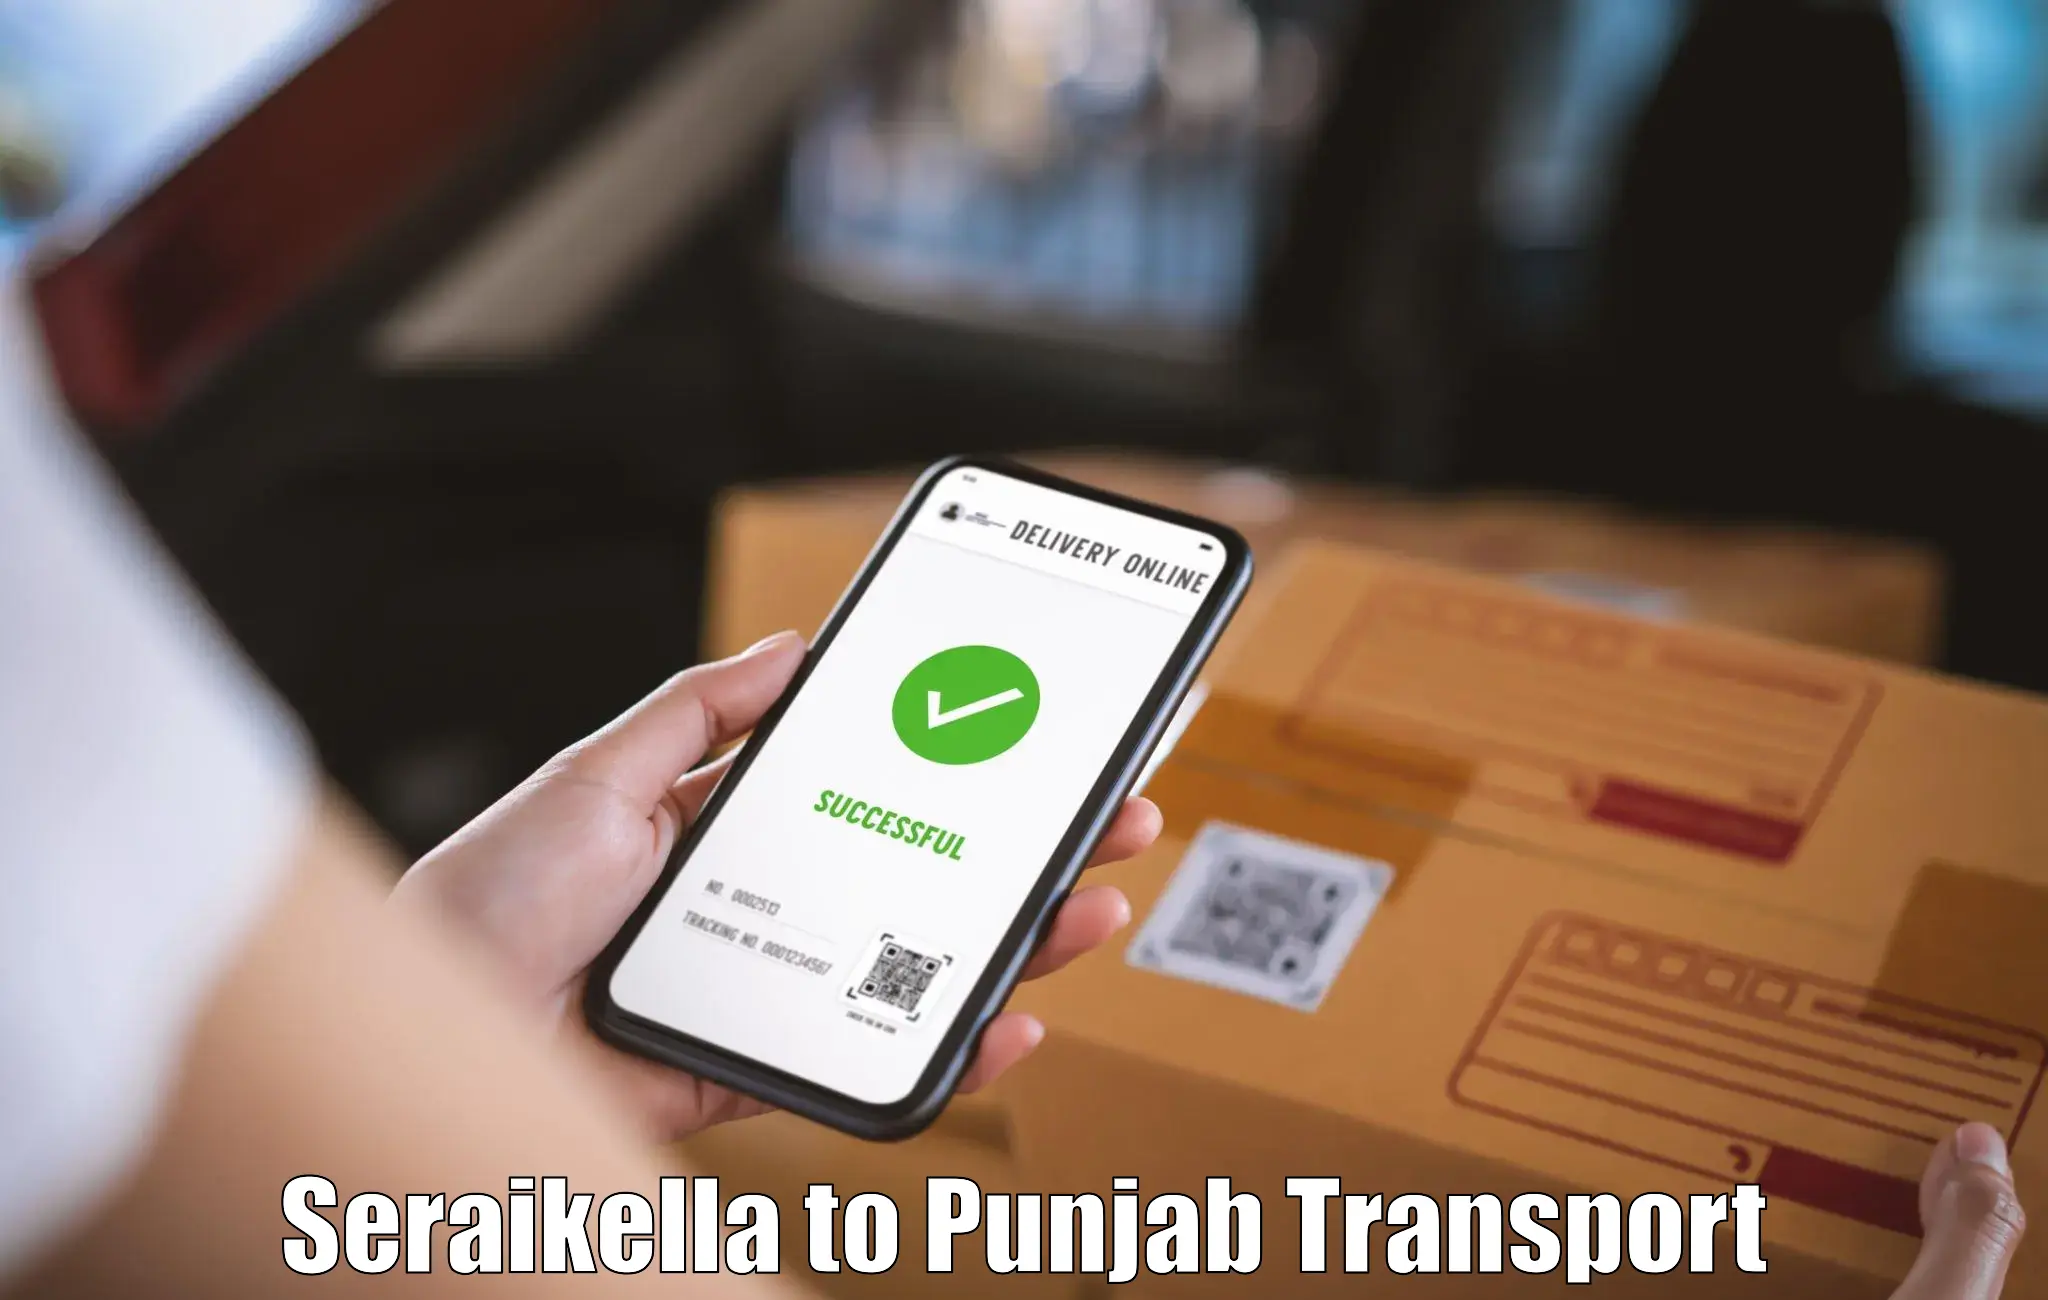 Nationwide transport services Seraikella to Gurdaspur